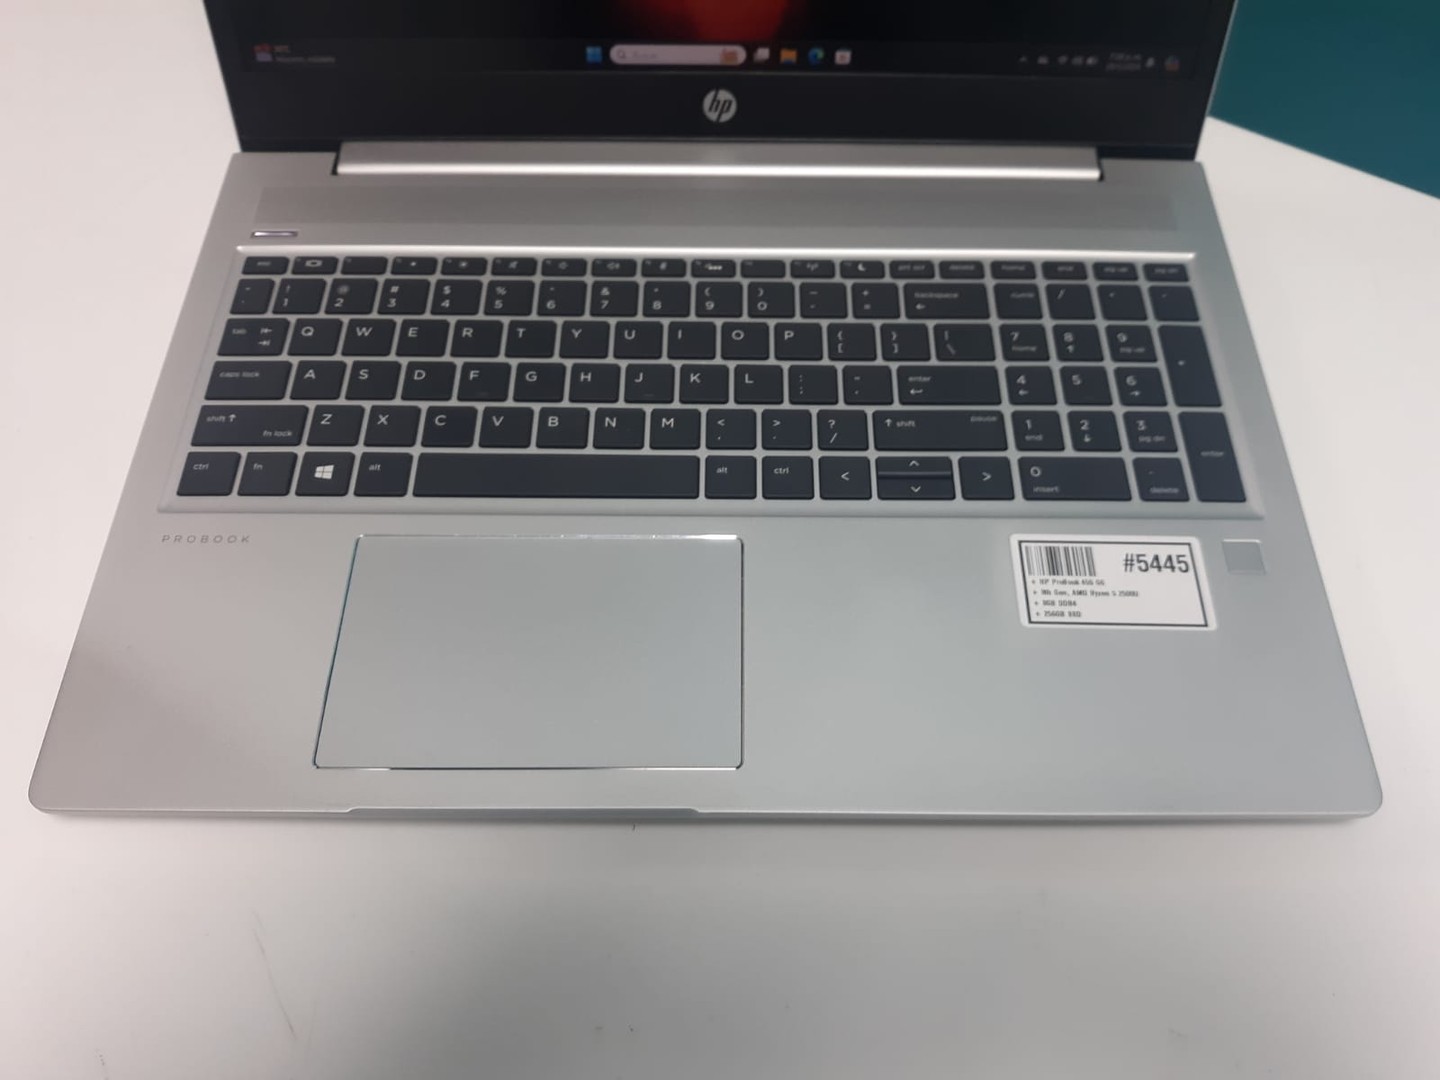 computadoras y laptops - Laptop, HP ProBook 455 G6 / 8th Gen, AMD Ryzen 5 2500U / 8GB DDR4 / 256GB SSD		
 8